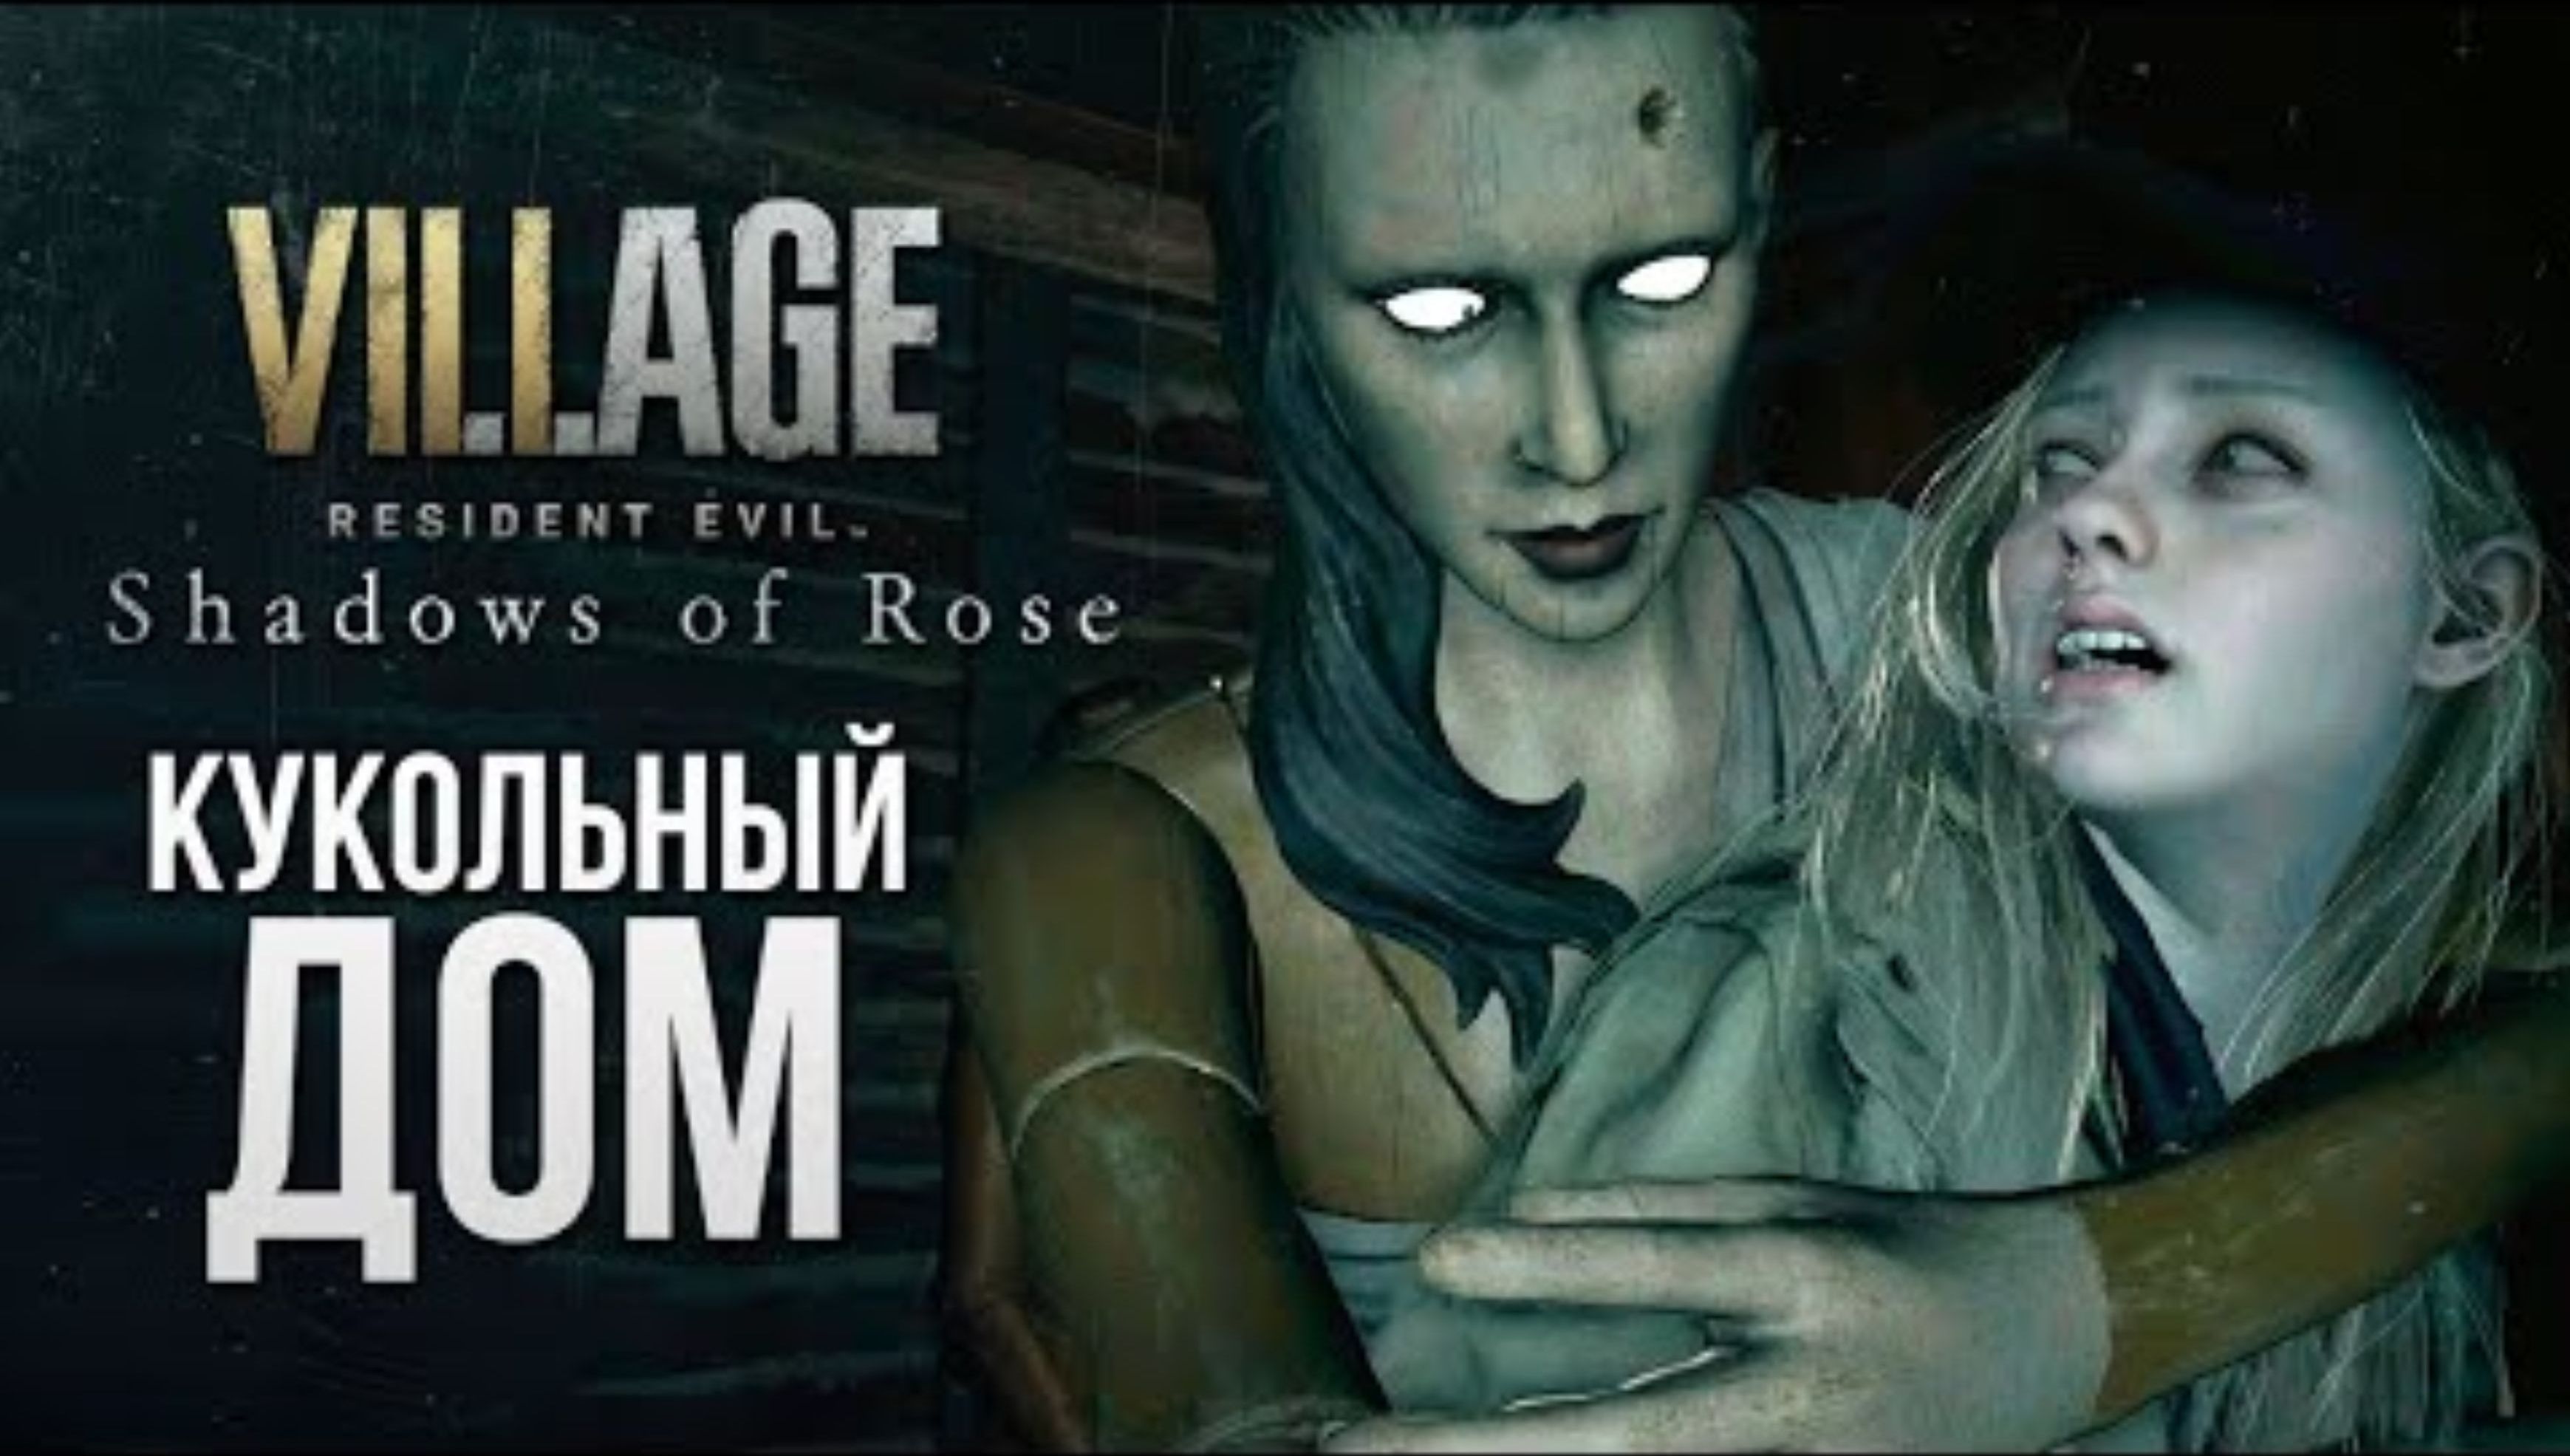 КУКОЛЬНЫЙ КОШМАР - Resident Evil Village： Shadow of Rose